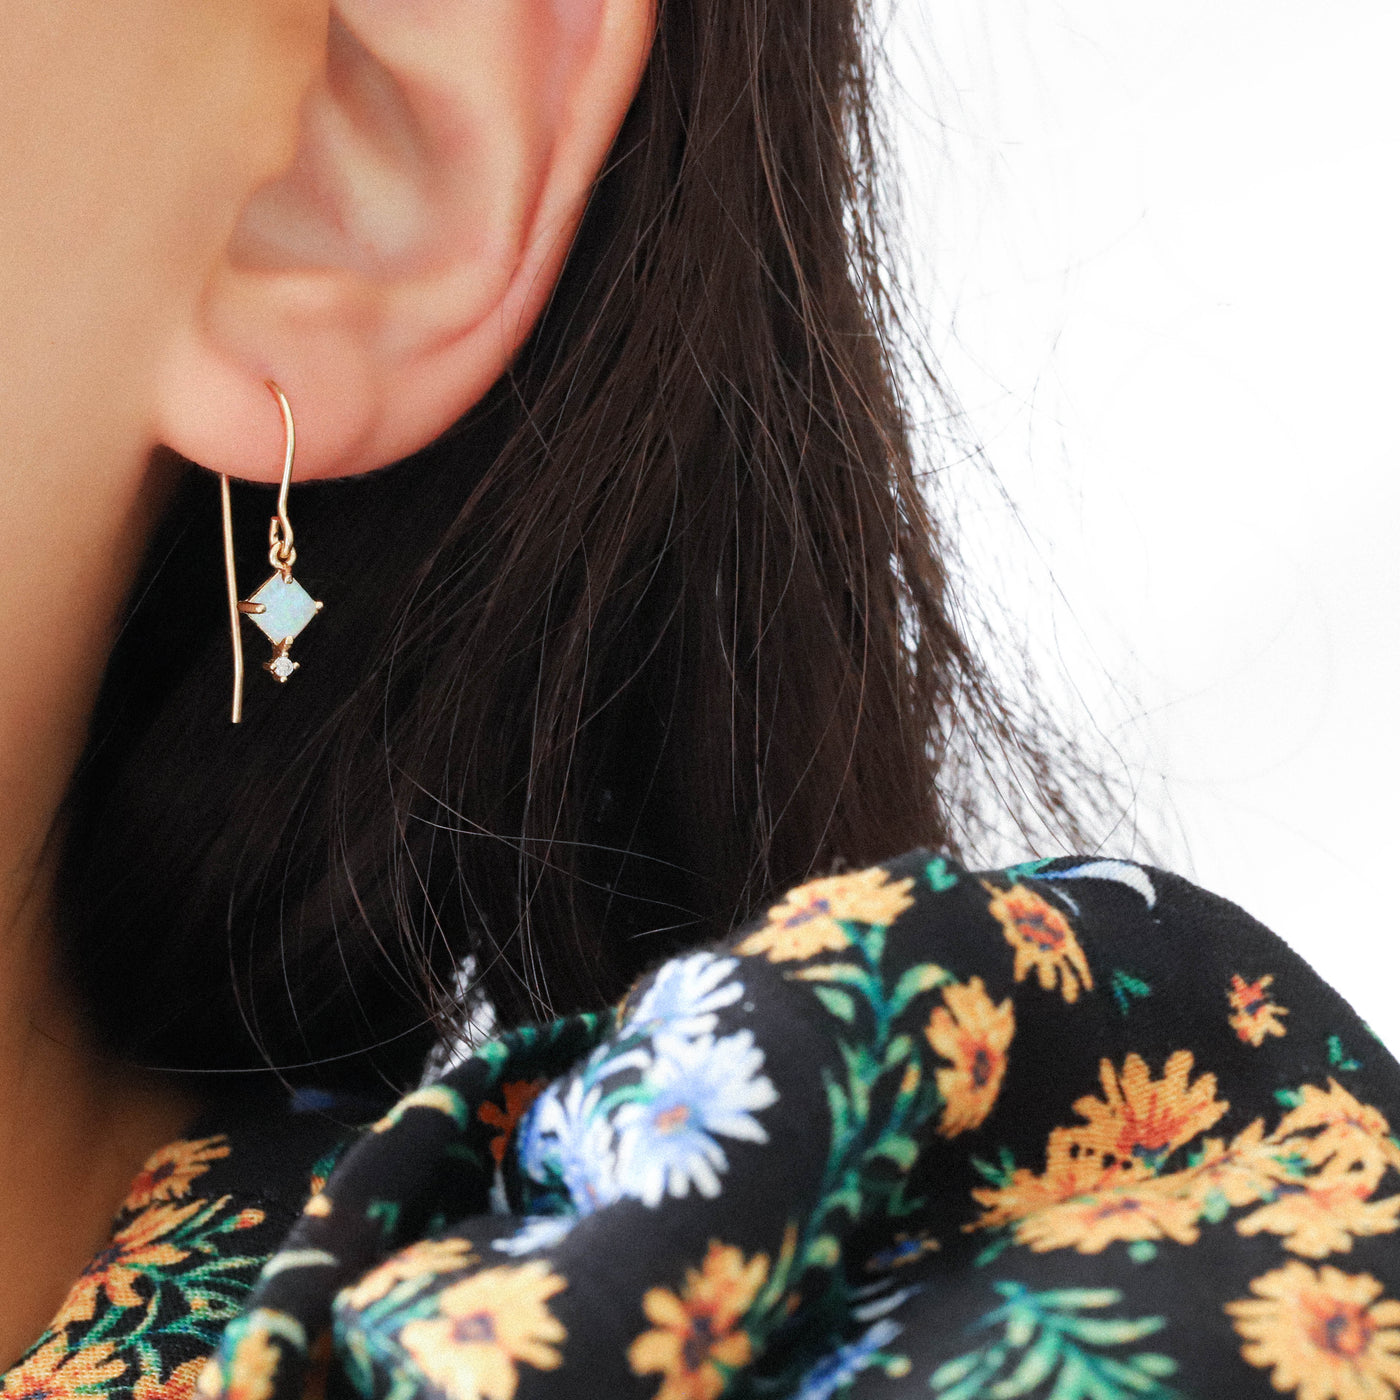 Woman wearing a gold opal earring